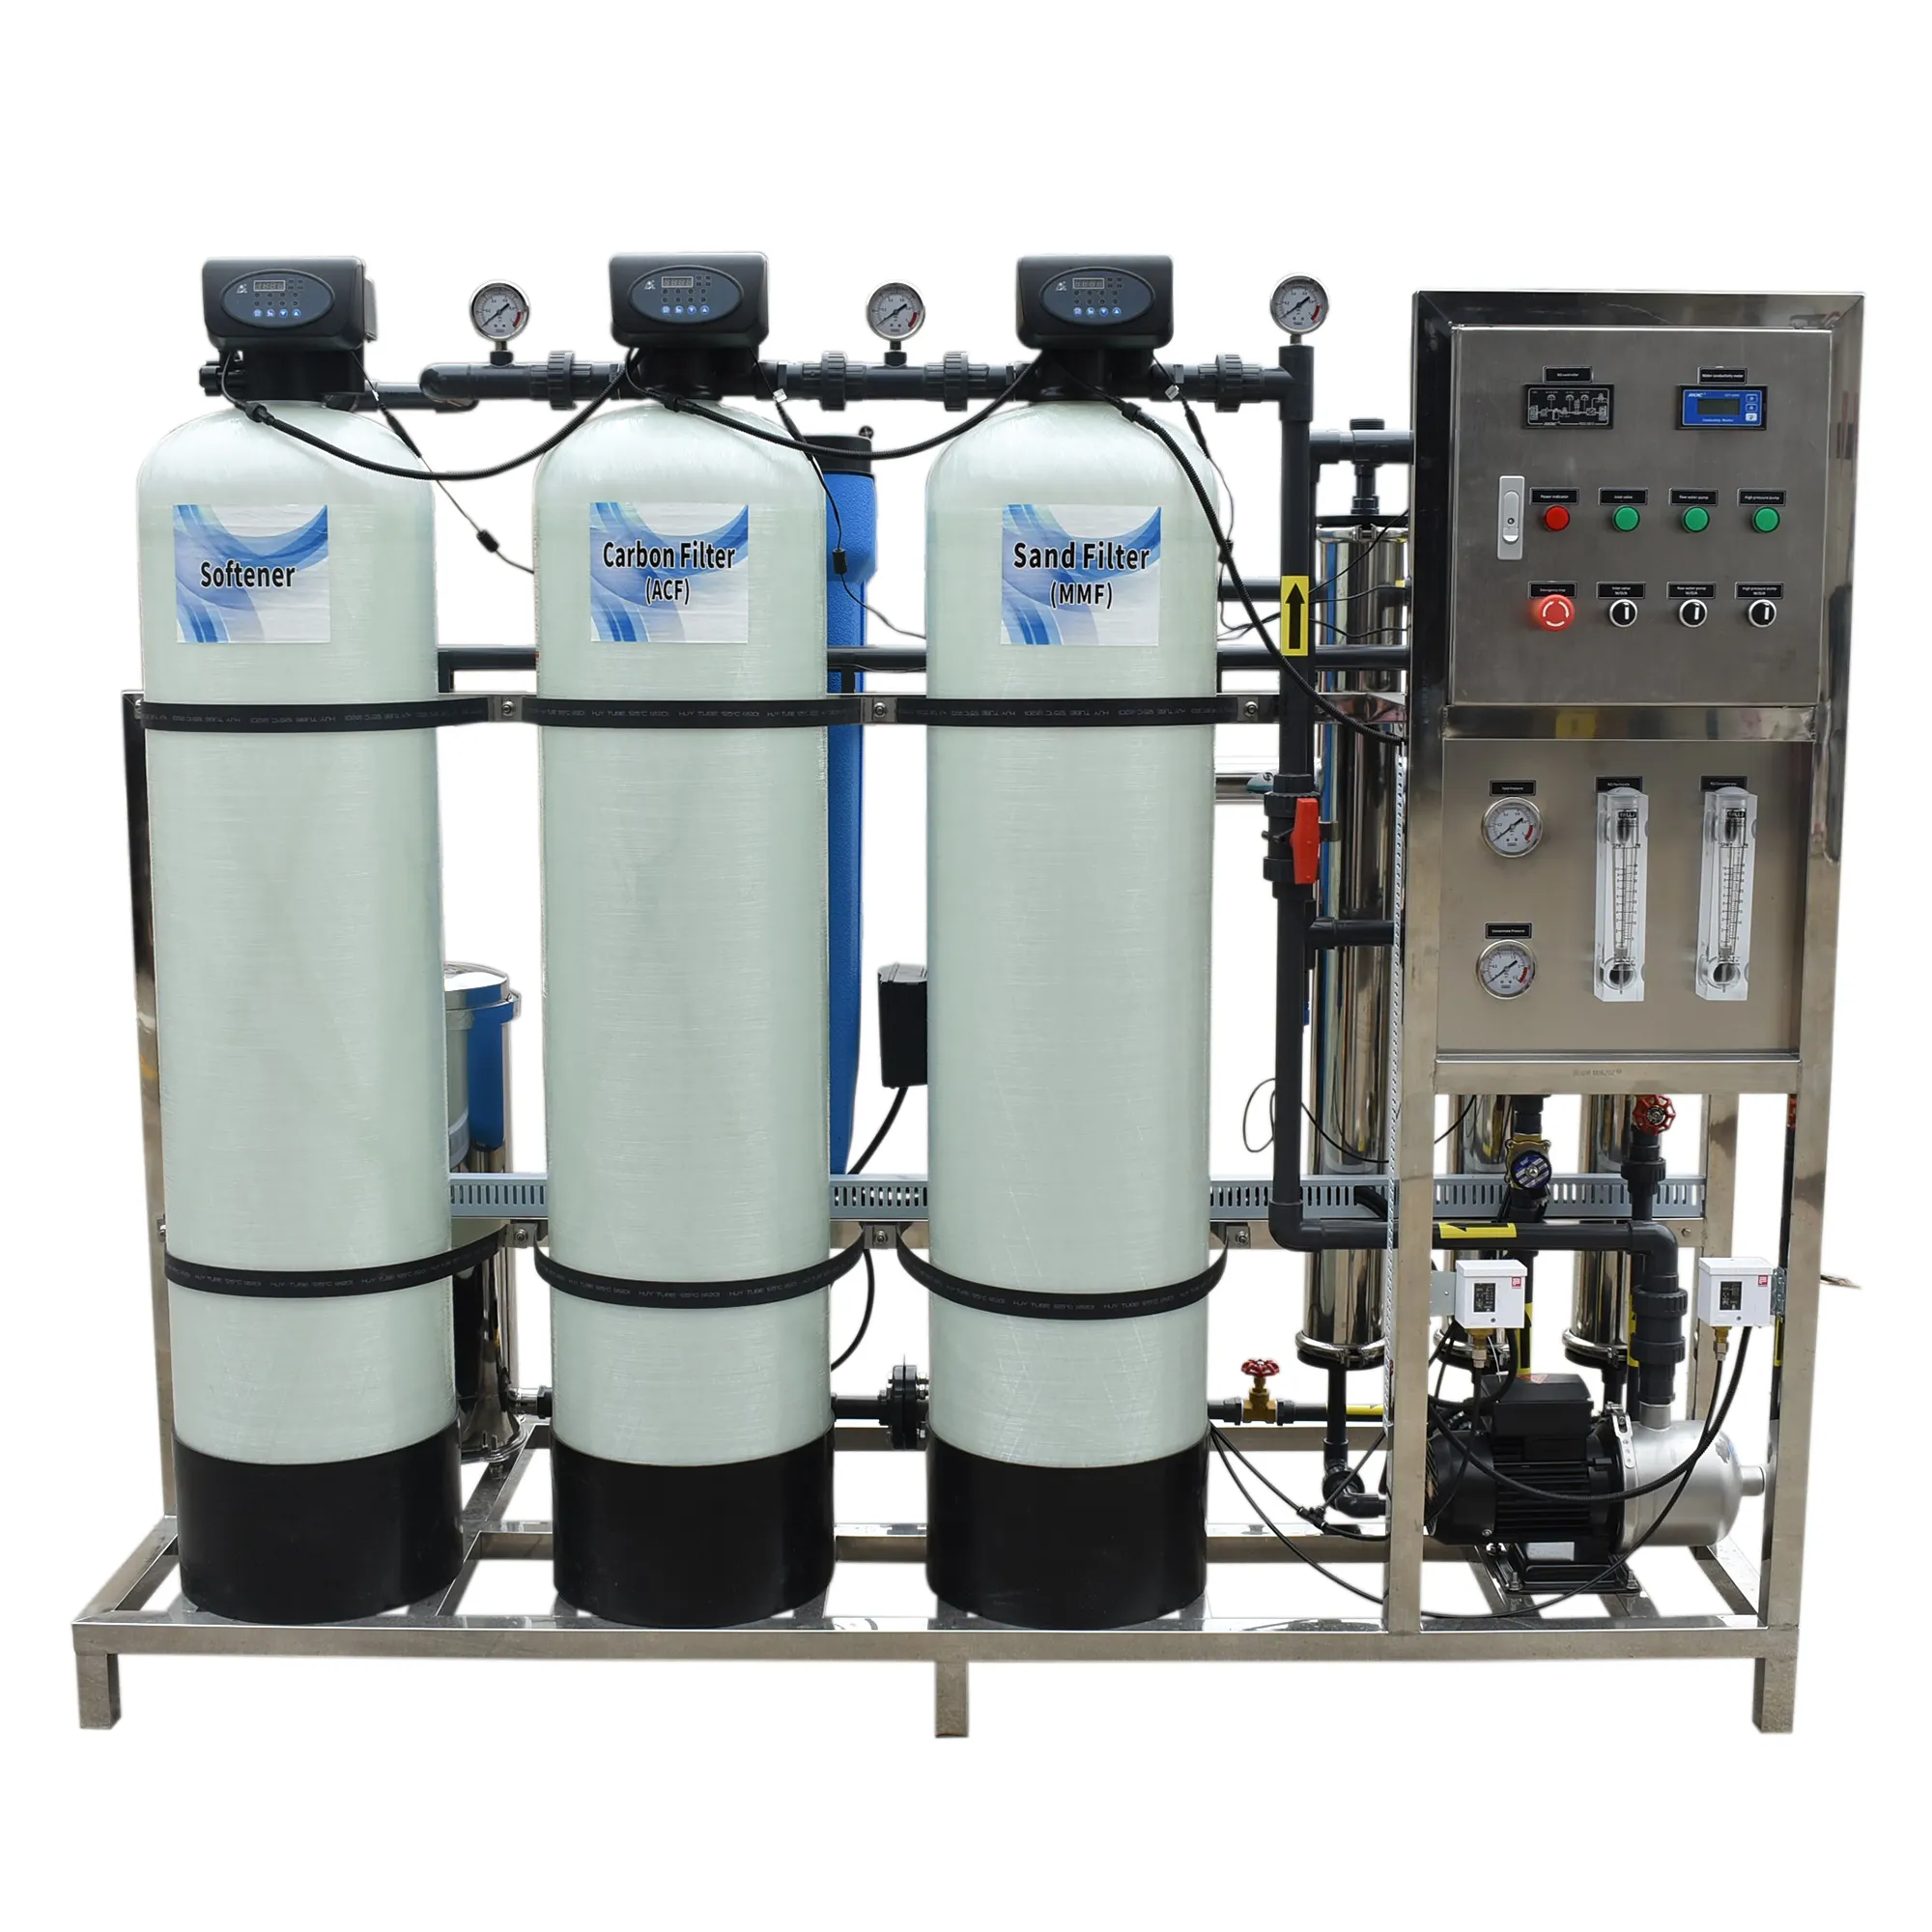 Ro ระบบบำบัดน้ำโรงงานเคมีดื่มน้ำกร่อยอัตโนมัติเครื่องขนาดใหญ่สำหรับเครื่องกรองน้ำย้อนกลับออสโมซิ